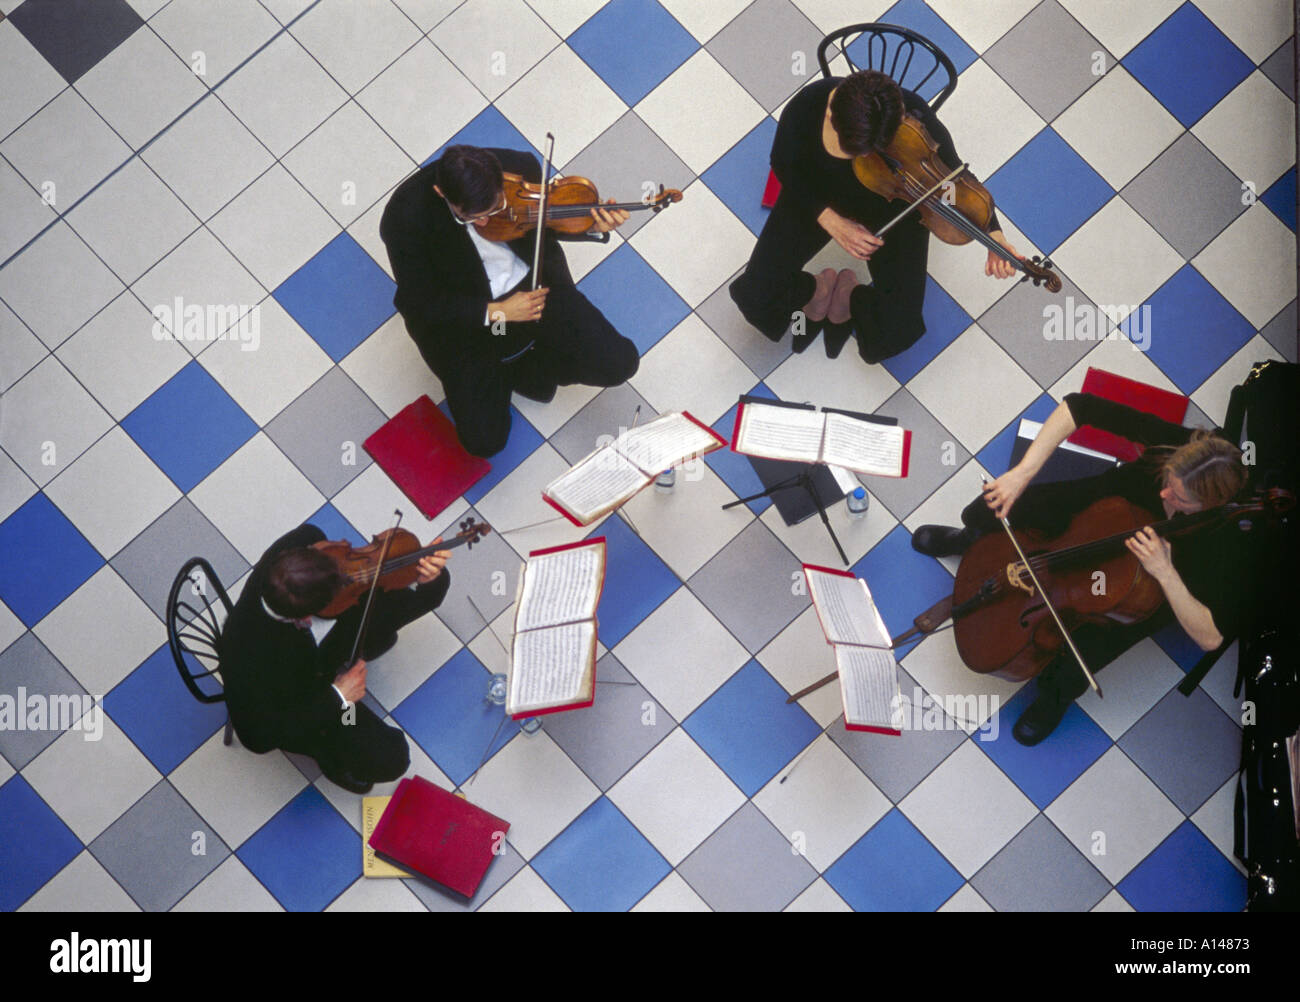 Streichquartett mit klassischer Musik im Einkaufszentrum Saint Nichola, um 2001 - Draufsicht. Sutton, Lonfon, Großbritannien Stockfoto